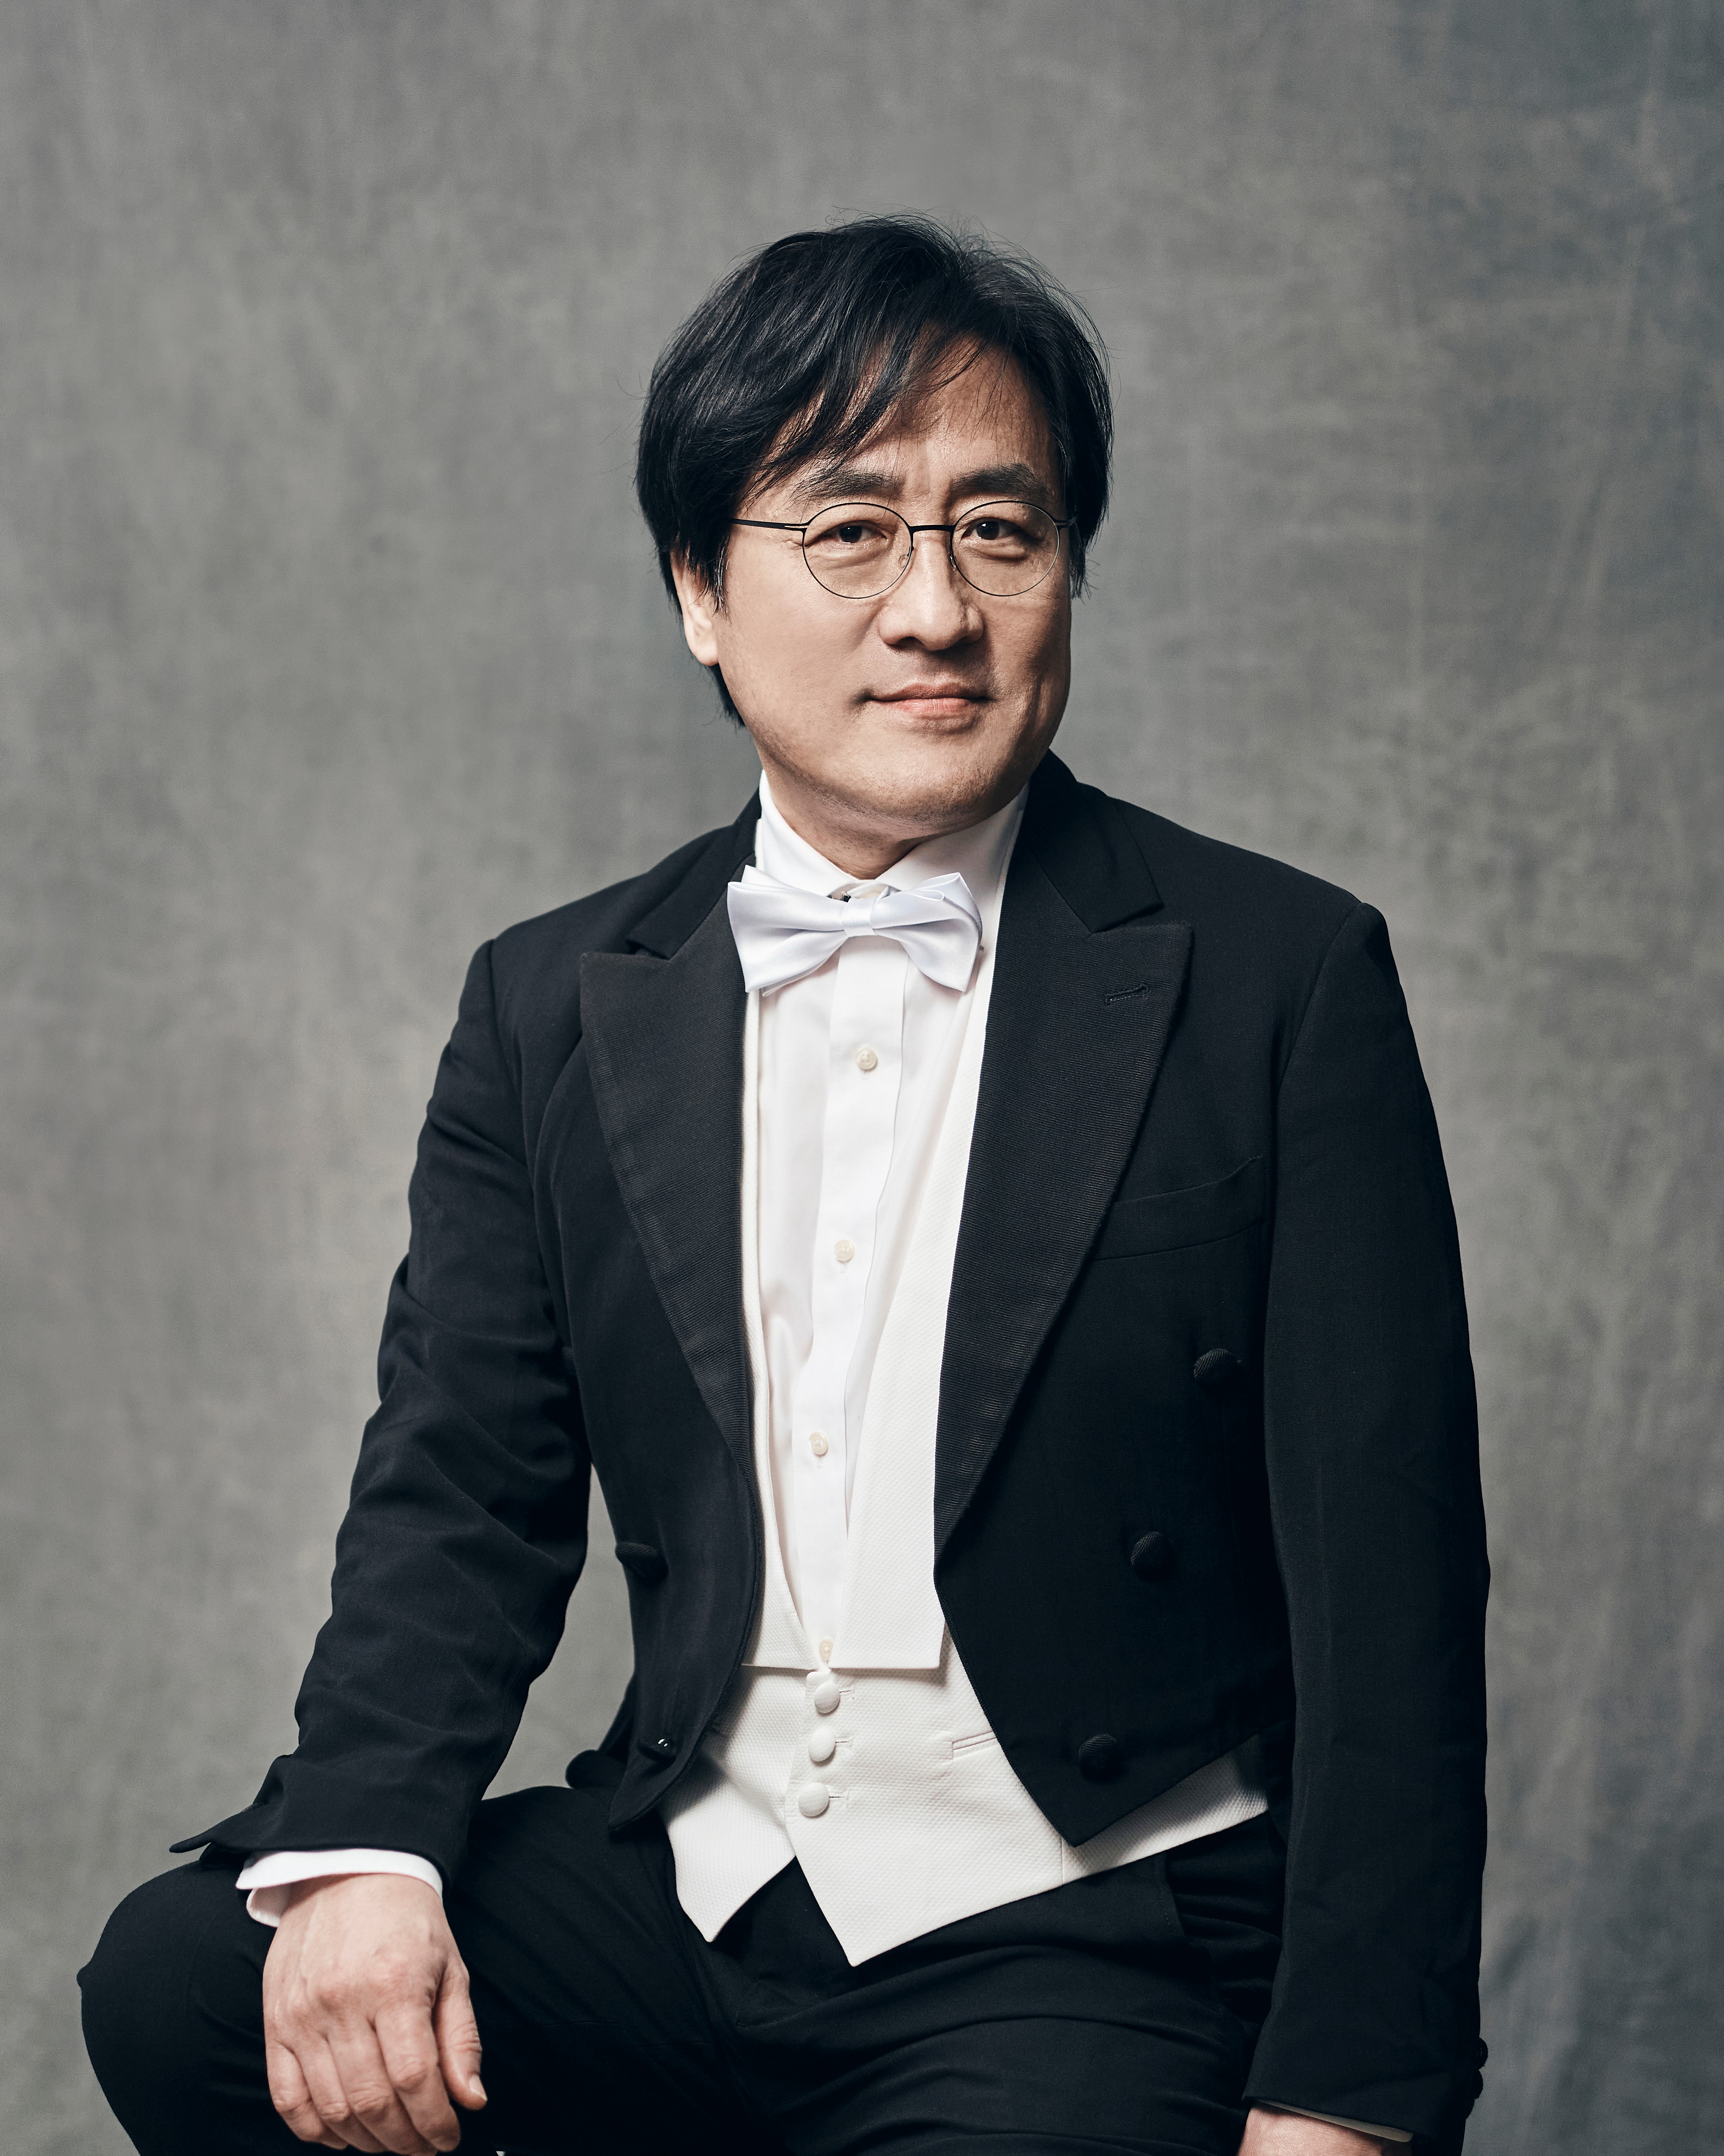 Conductor Yun Sung Chang